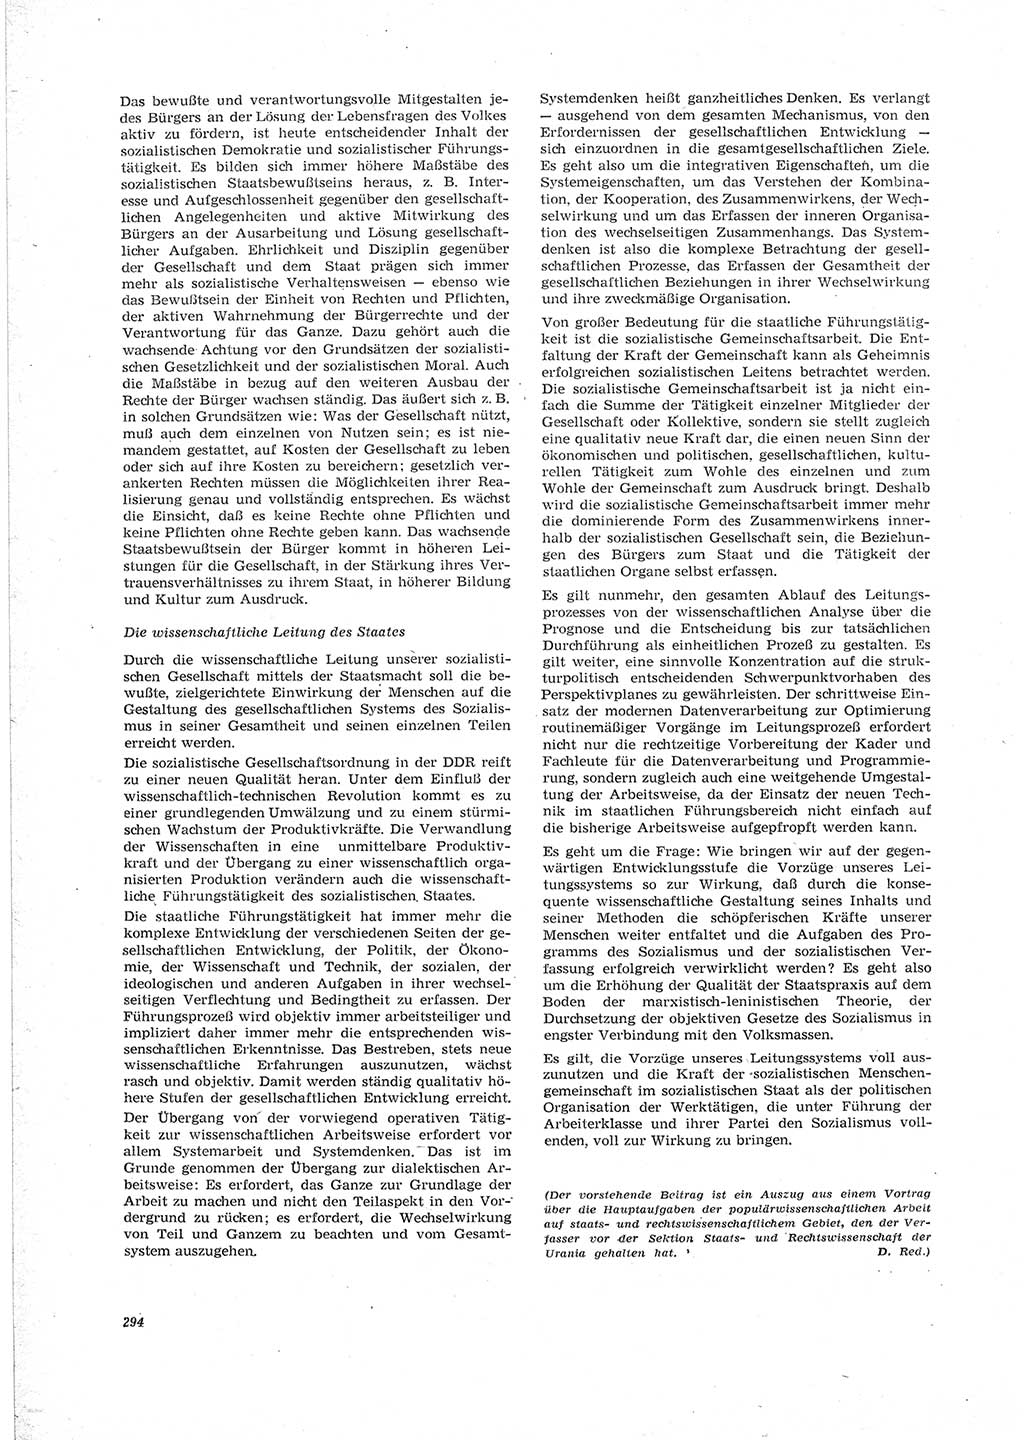 Neue Justiz (NJ), Zeitschrift für Recht und Rechtswissenschaft [Deutsche Demokratische Republik (DDR)], 23. Jahrgang 1969, Seite 294 (NJ DDR 1969, S. 294)